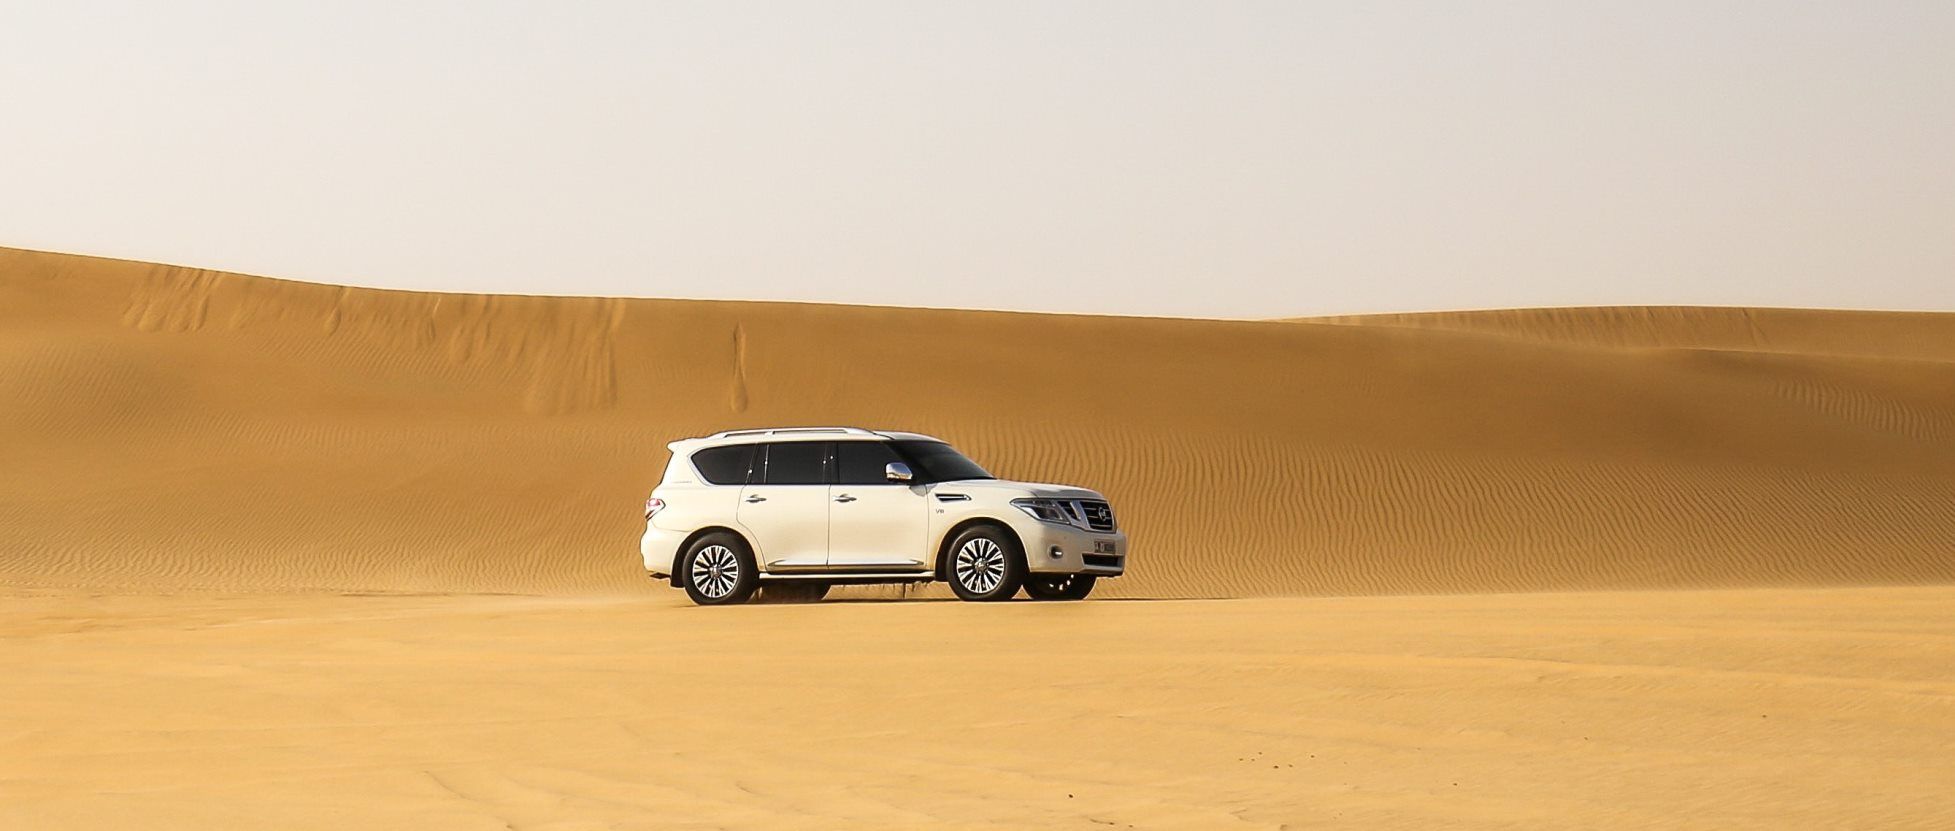 white-vehicles-on-desert